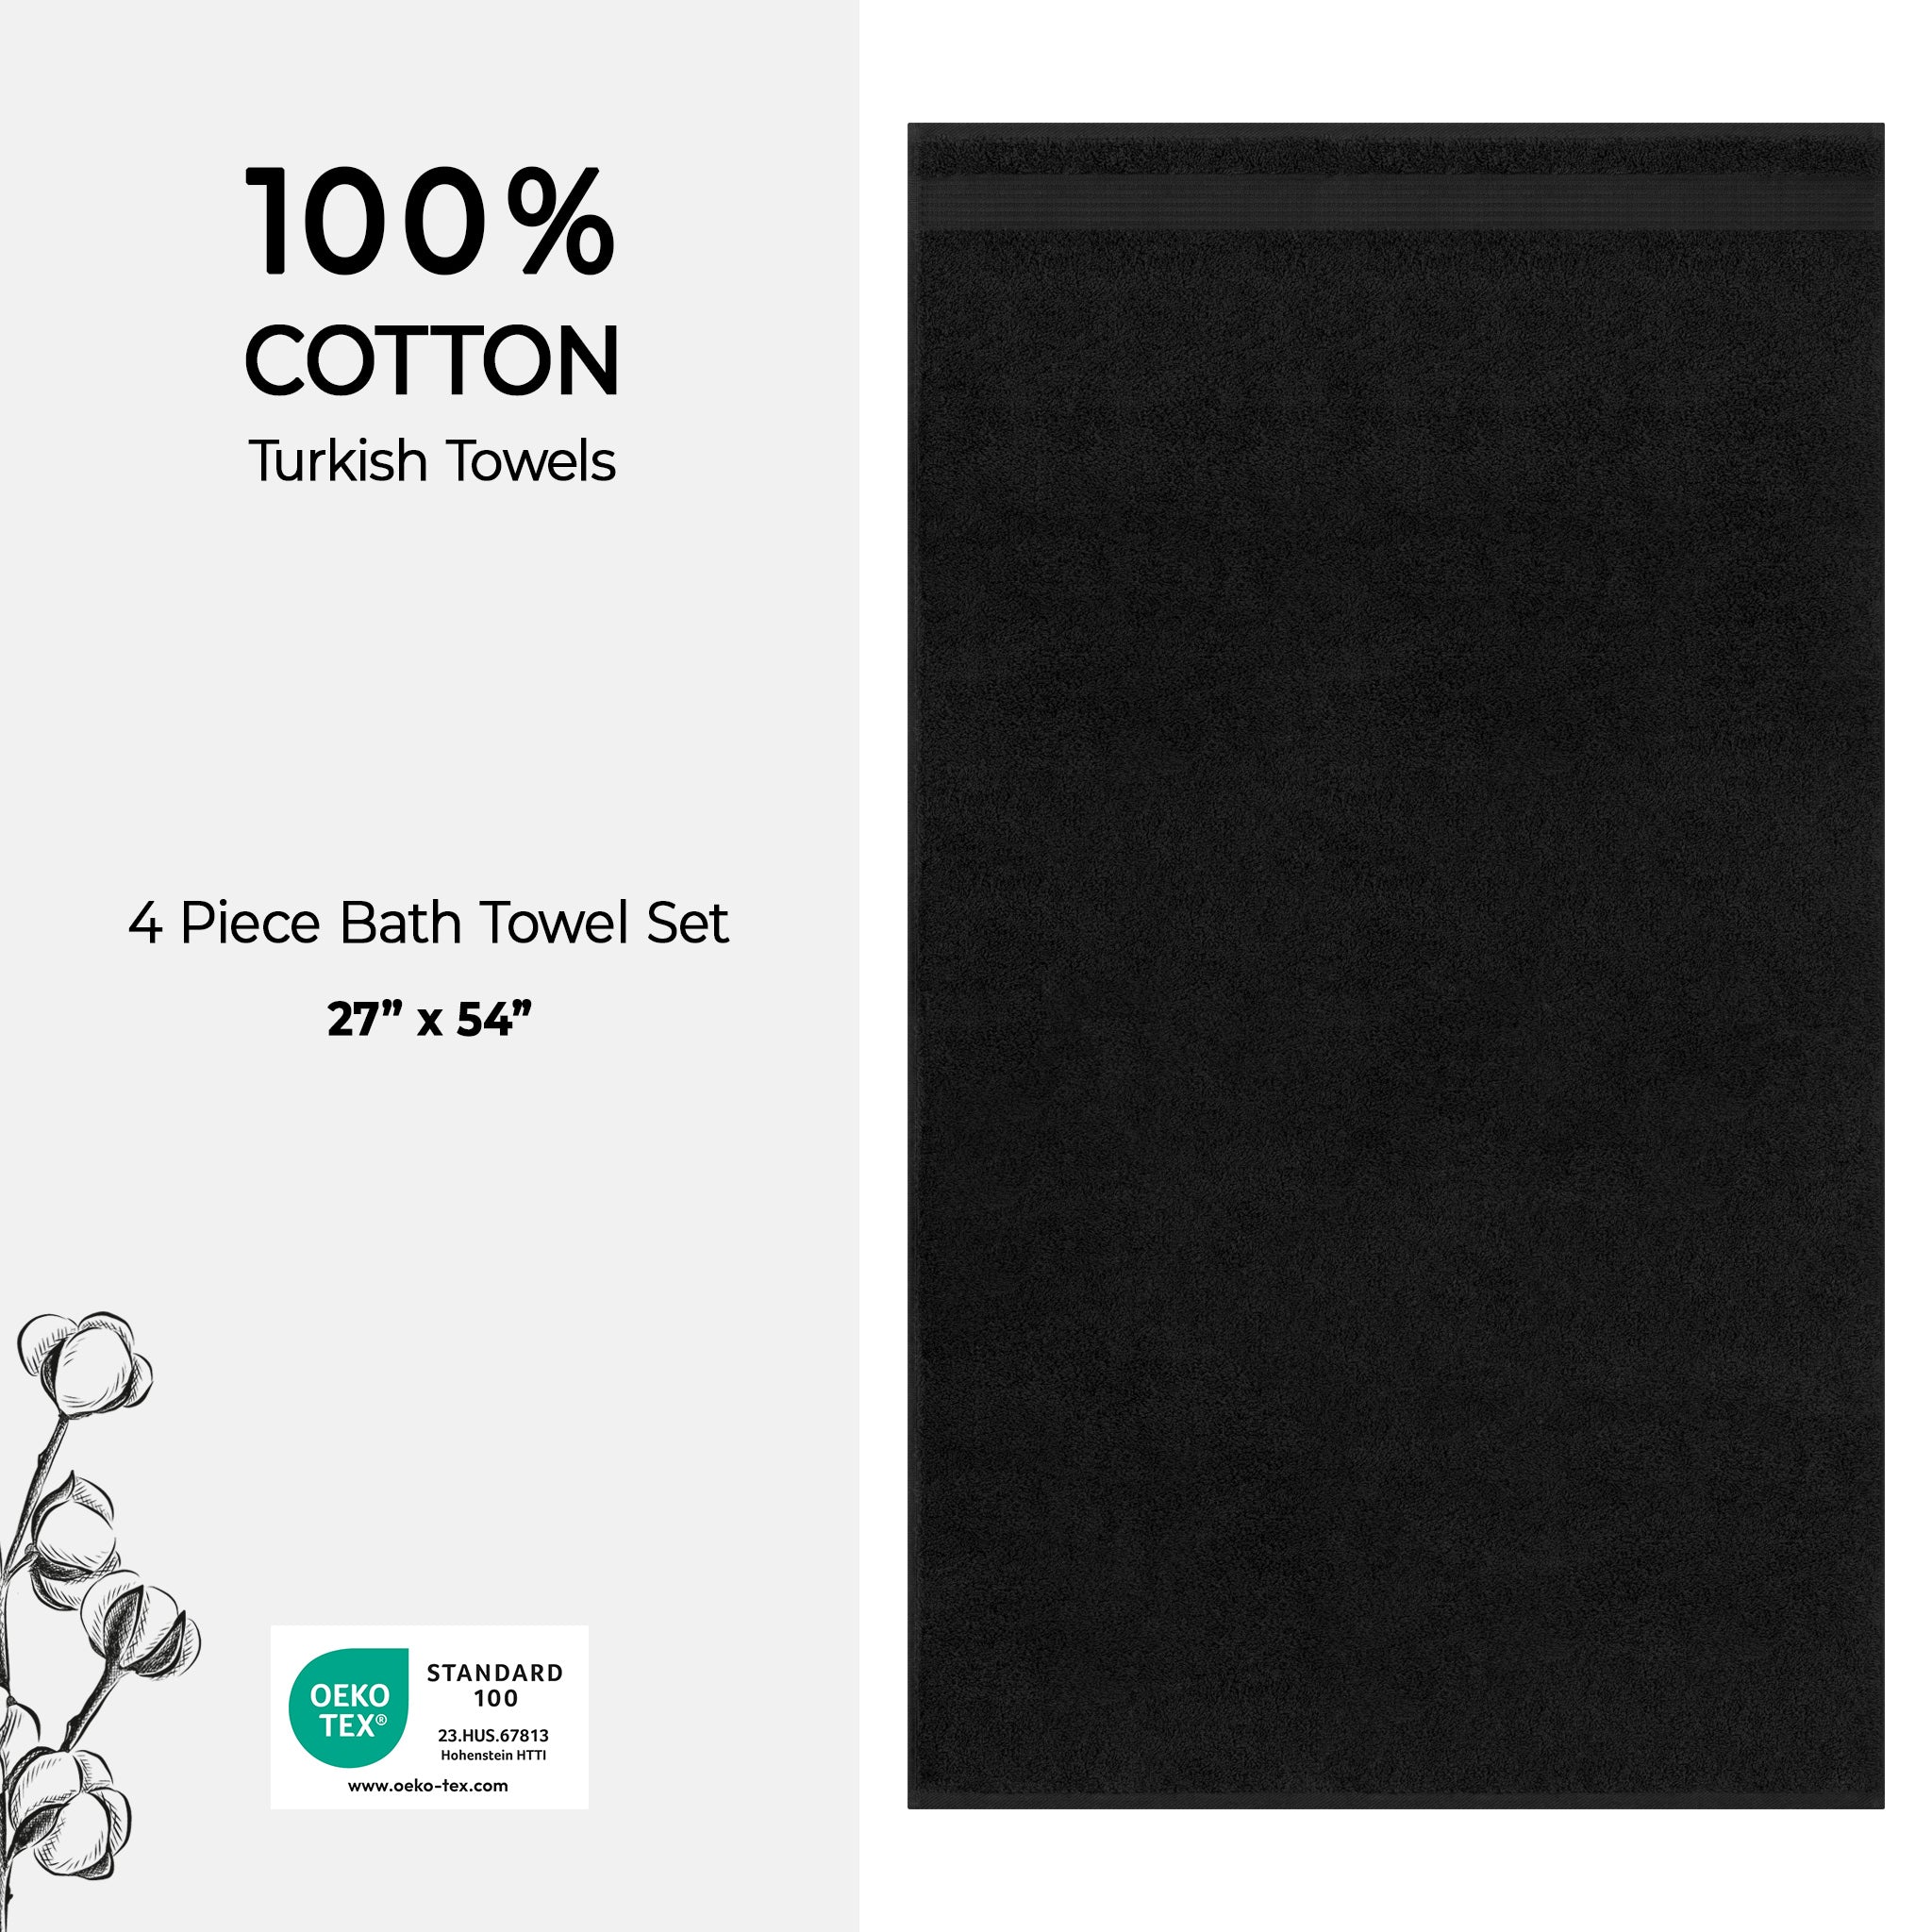 American Soft Linen Bekos 100% Cotton Turkish Towels, 4 Piece Bath Towel Set -black-04